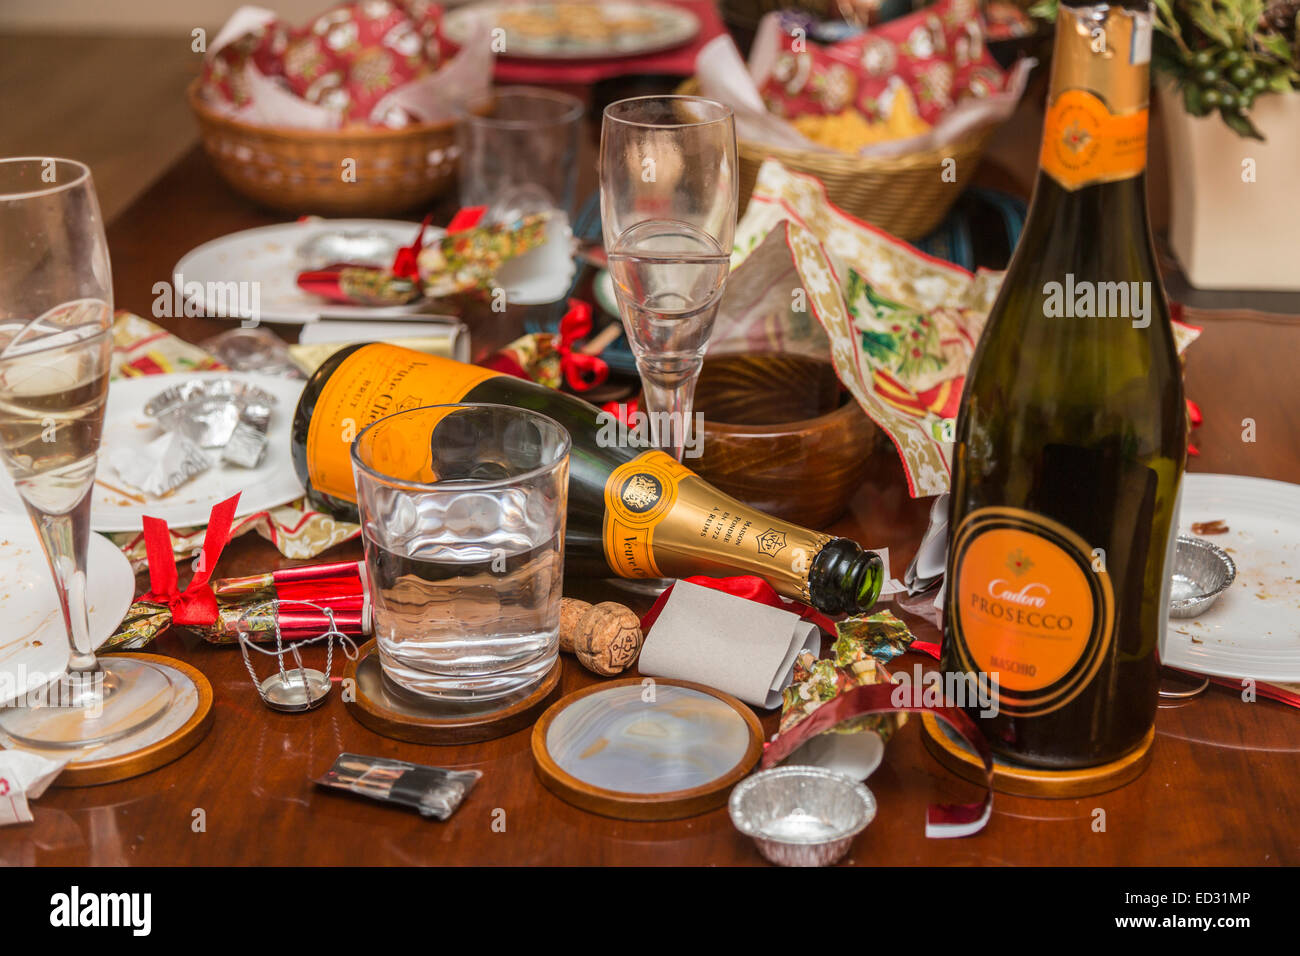 Schutt, Müll und ungewaschenen Gläser im Gefolge einer festlichen Jahreszeit Partei mit einer leeren Flasche Veuve Clicquot Champagner und anderem Müll Stockfoto